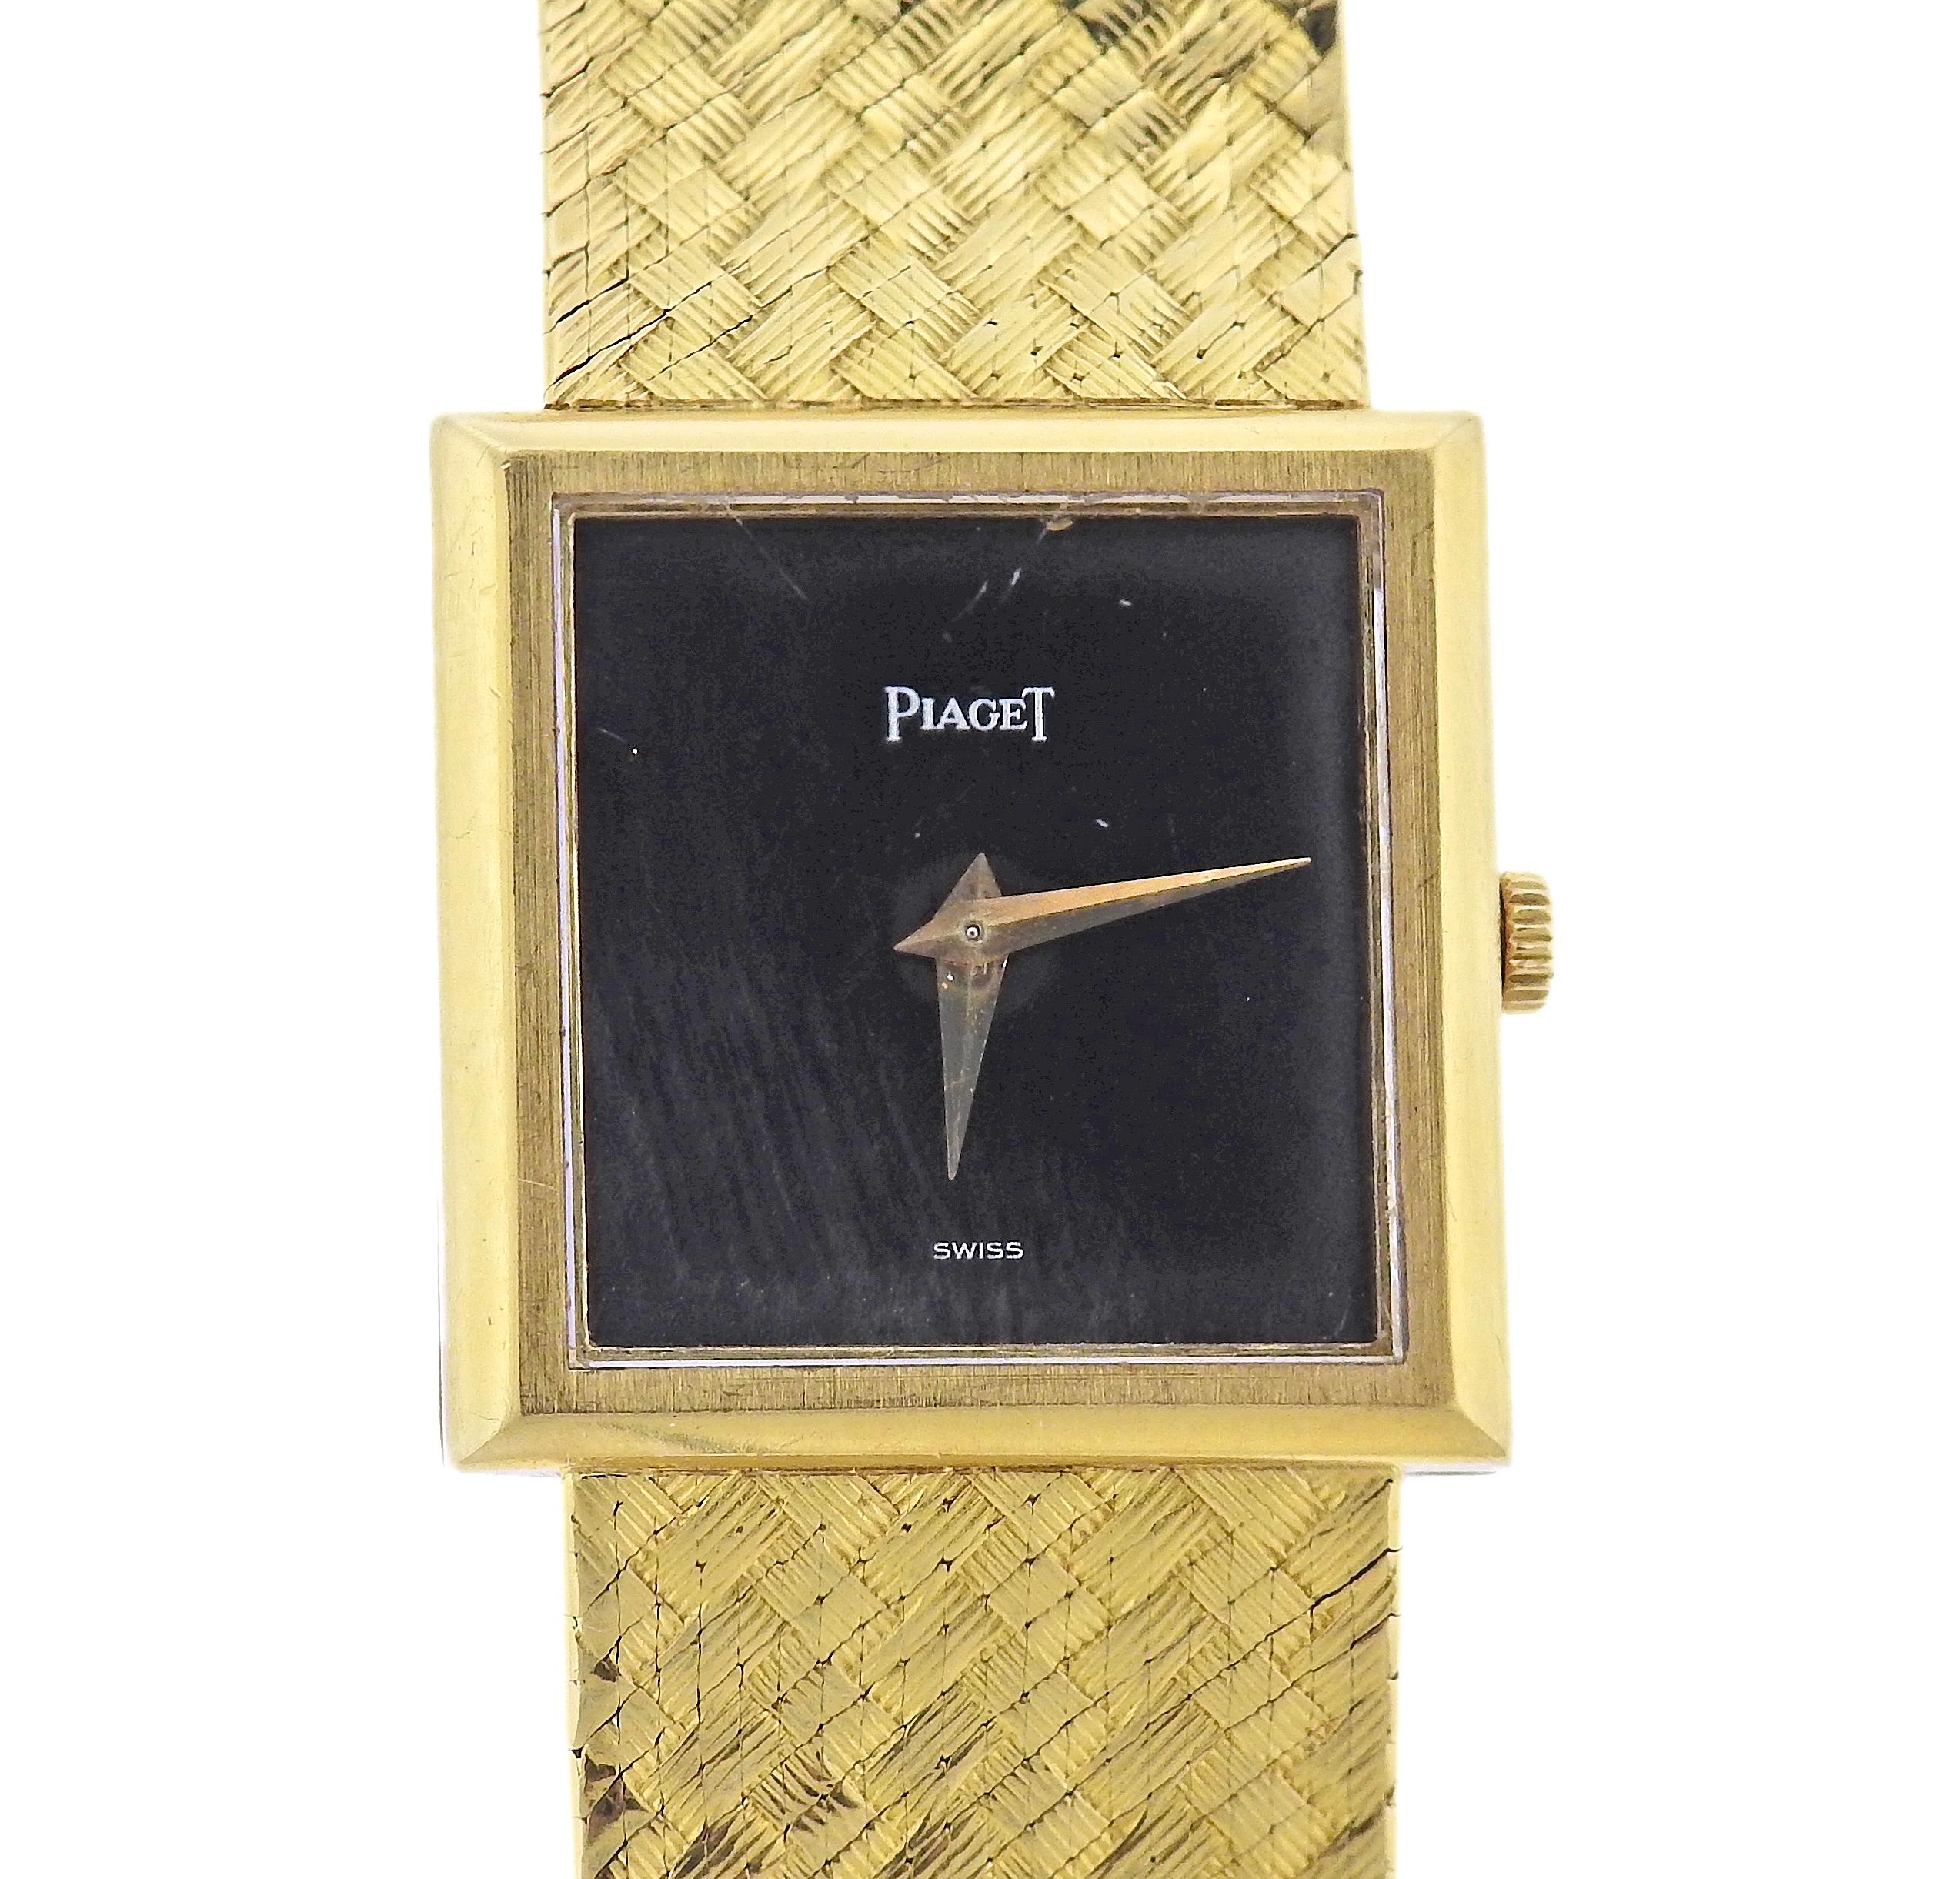 Montre Piaget à remontage manuel en or 18 carats, avec diamant noir. Le boîtier mesure 22 mm x 23 mm. Bracelet d'une longueur de 6,5